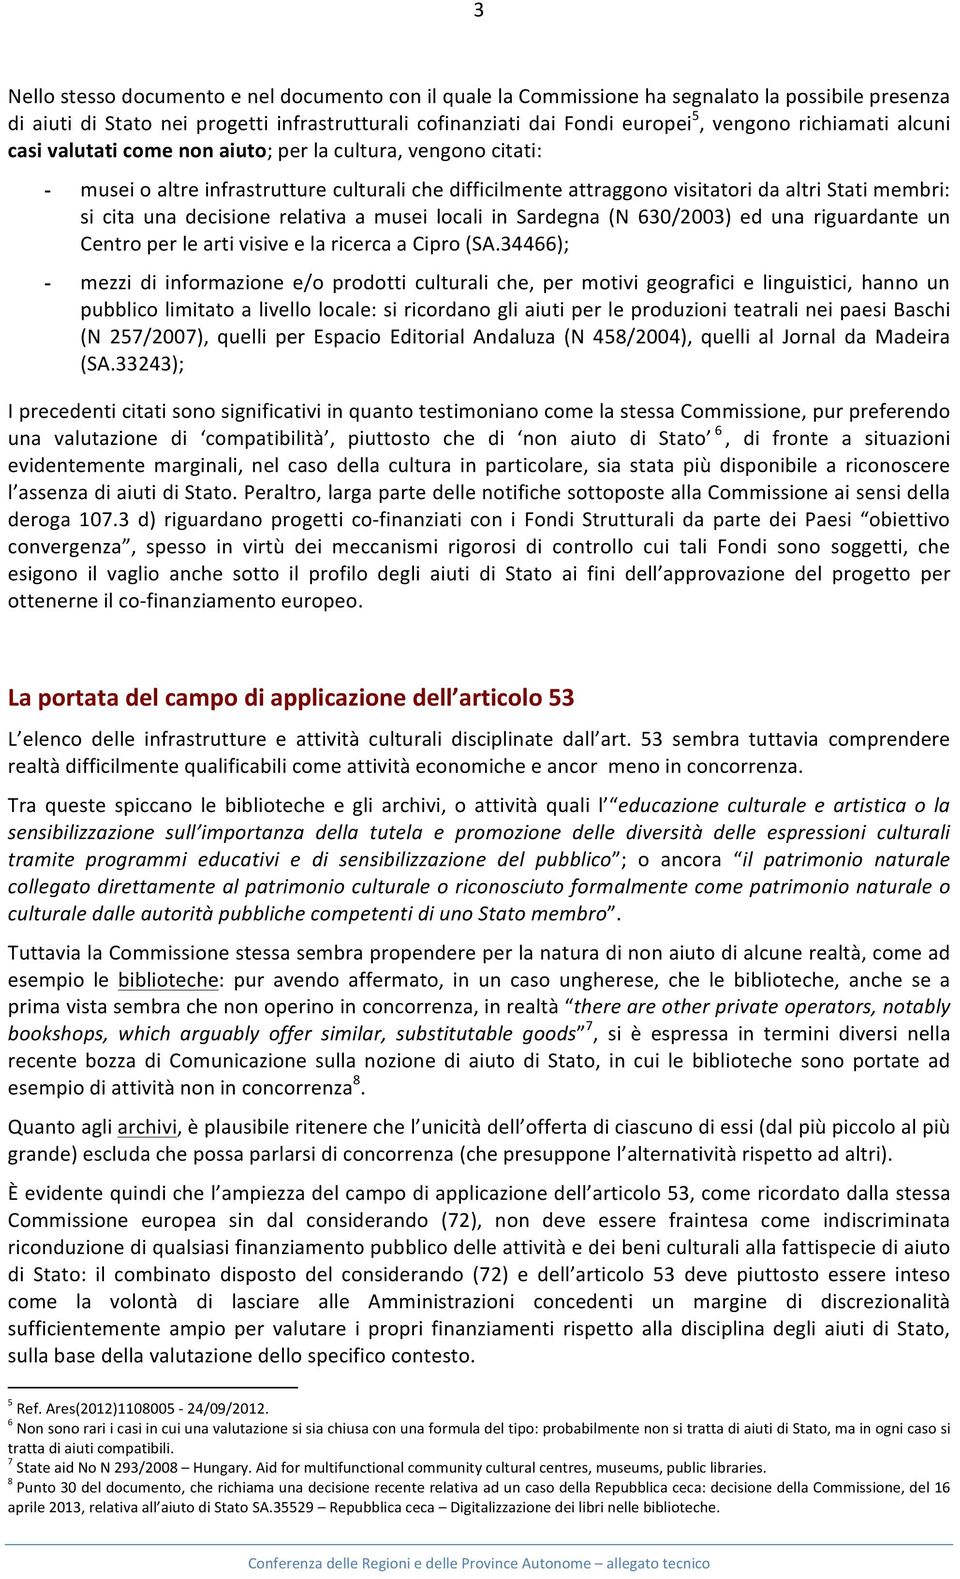 decisione relativa a musei locali in Sardegna (N 630/2003) ed una riguardante un Centro per le arti visive e la ricerca a Cipro (SA.